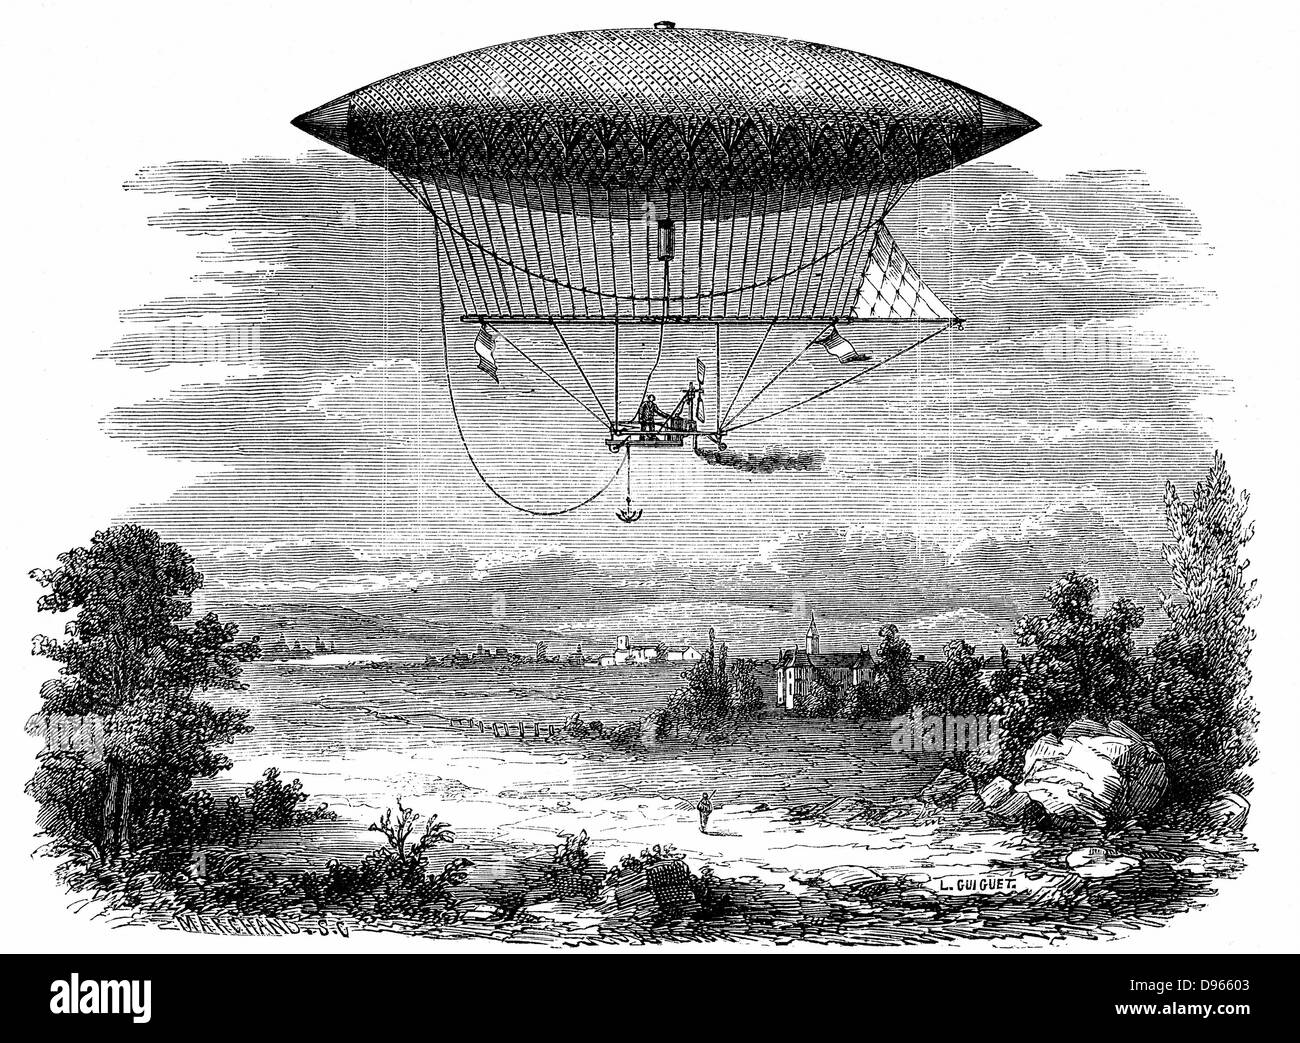 Henri Giffard (1825-1882) a vapore (sterzabile dirigibile) dirigibile durante la sua salita del 25 settembre 1852: a forma di sigaro gasbag. Da Louis Figuier 'Les Merveilles de la Science" (Parigi, c1870). Foto Stock